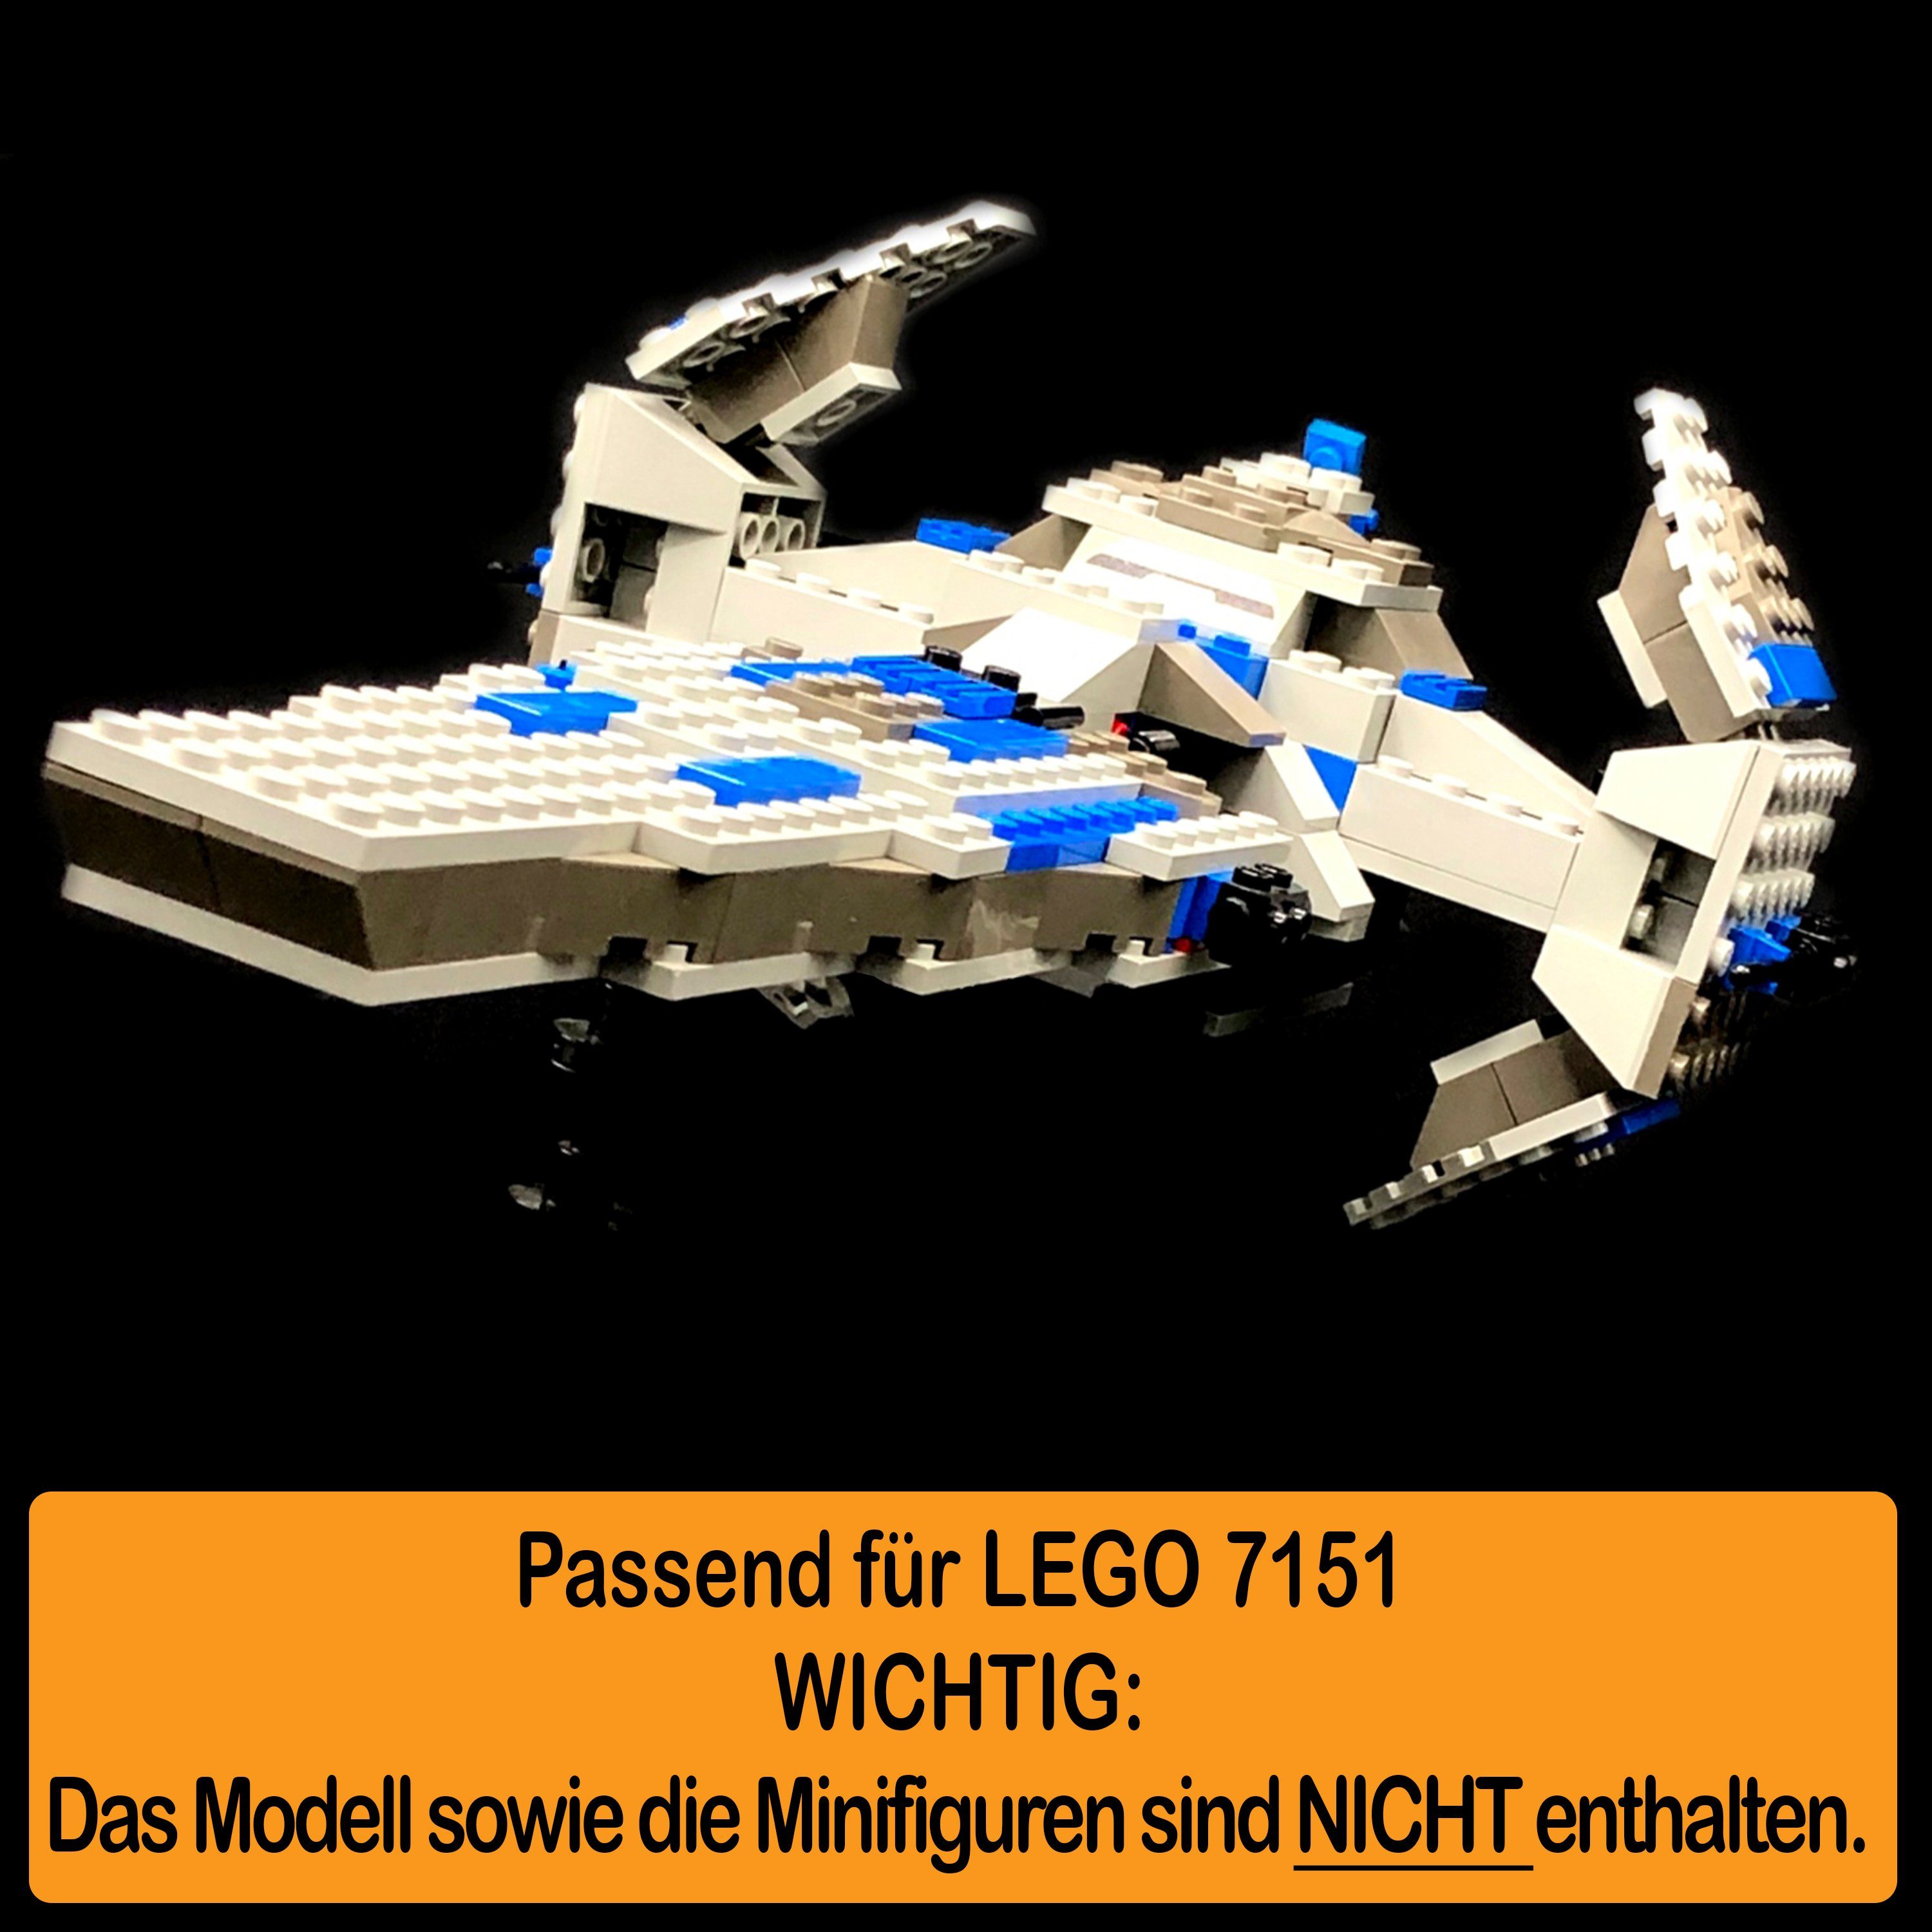 Germany Acryl einstellbar, Infiltrator zusammenbauen), Standfuß LEGO und 100% in für (verschiedene Sith Stand selbst AREA17 Made zum Winkel Display 7151 Positionen